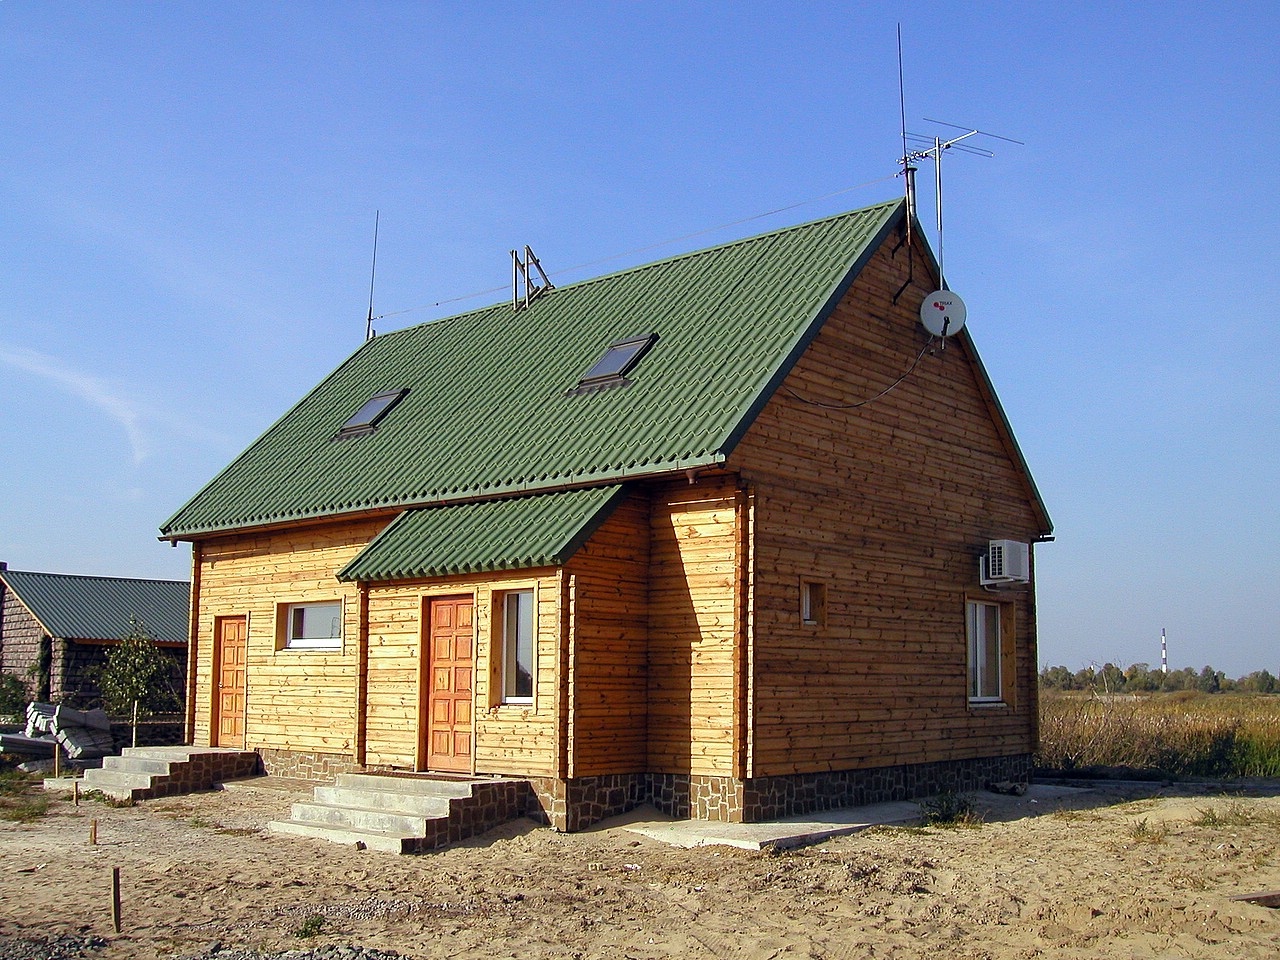 Rest house with sauna. Kyiv, Osokorki